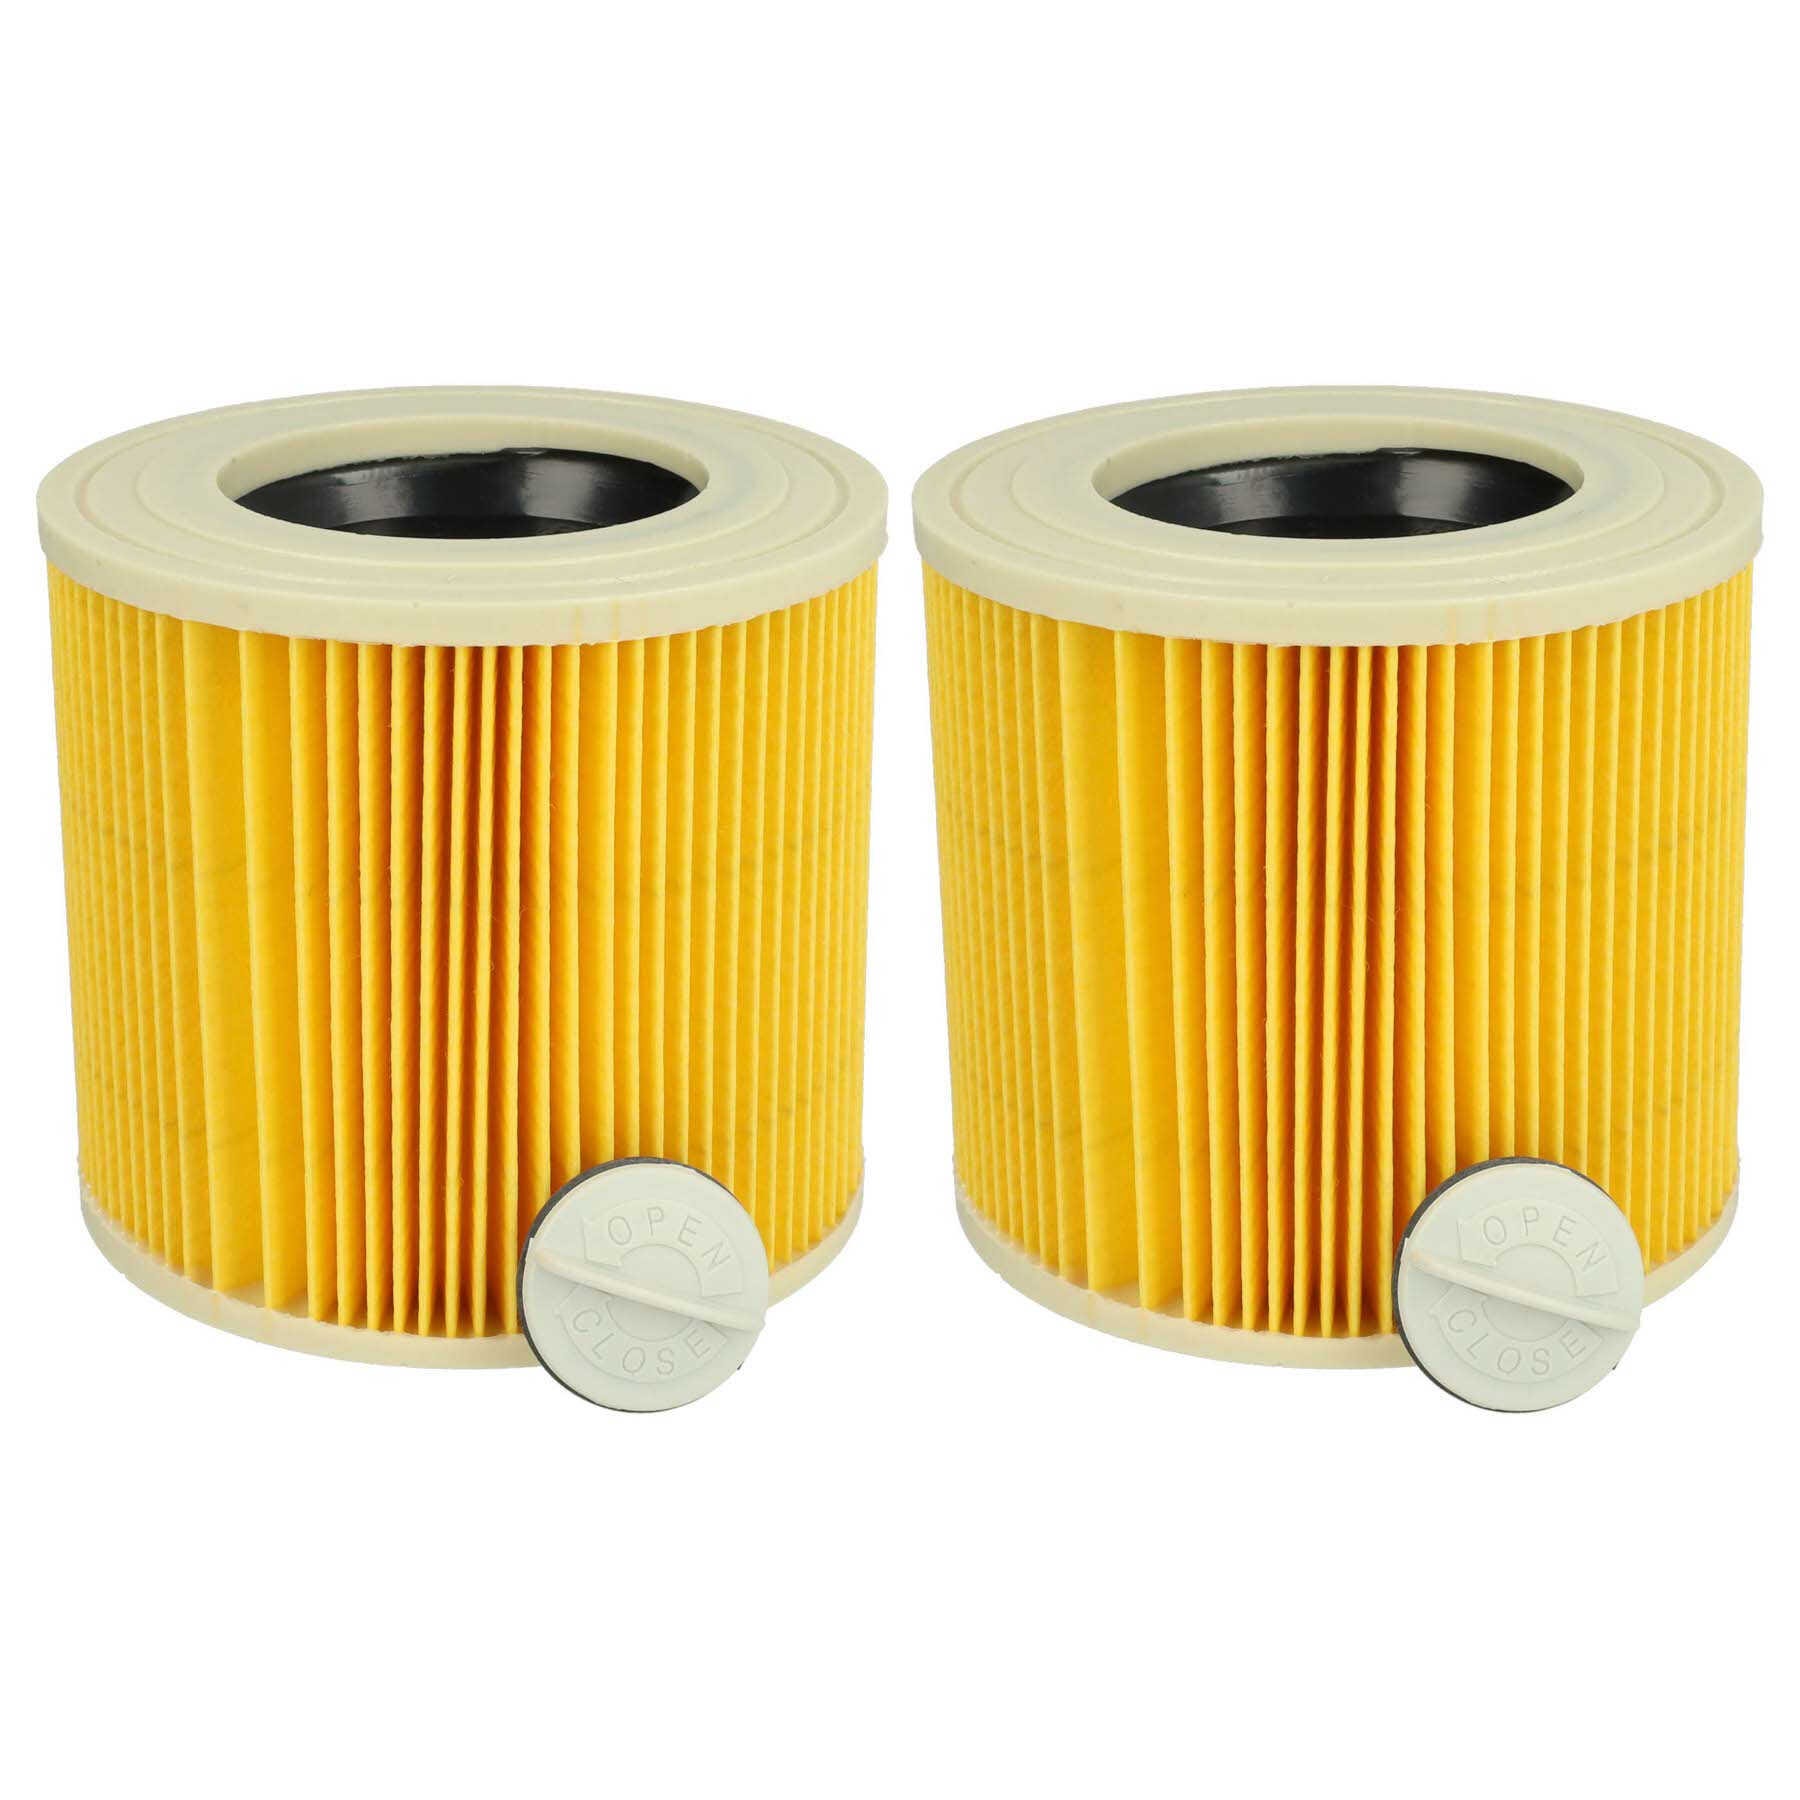 Vhbw set da 2x filtro a pieghe piatte compatibile con Kärcher WD 3, WD  3.200, WD 2500 M aspiratore umido/secco - Cartuccia filtrante, giallo